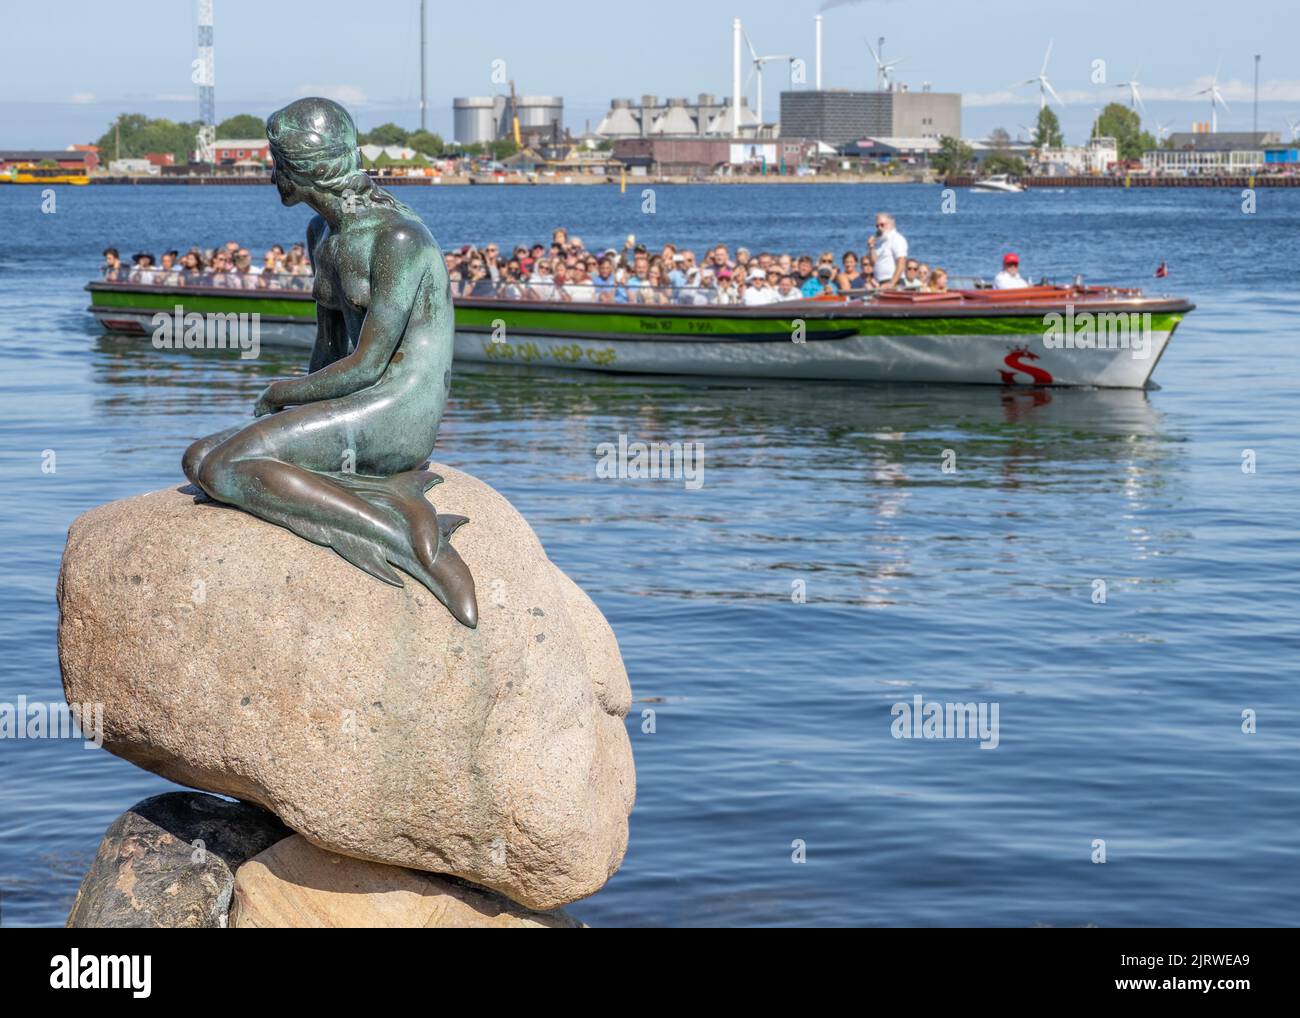 Turisti a Copenhagen in Danimarca visitando la scultura in bronzo della Sirenetta di Edvard Eriksen sul lungomare di Langelinie vicino al porto della città Foto Stock